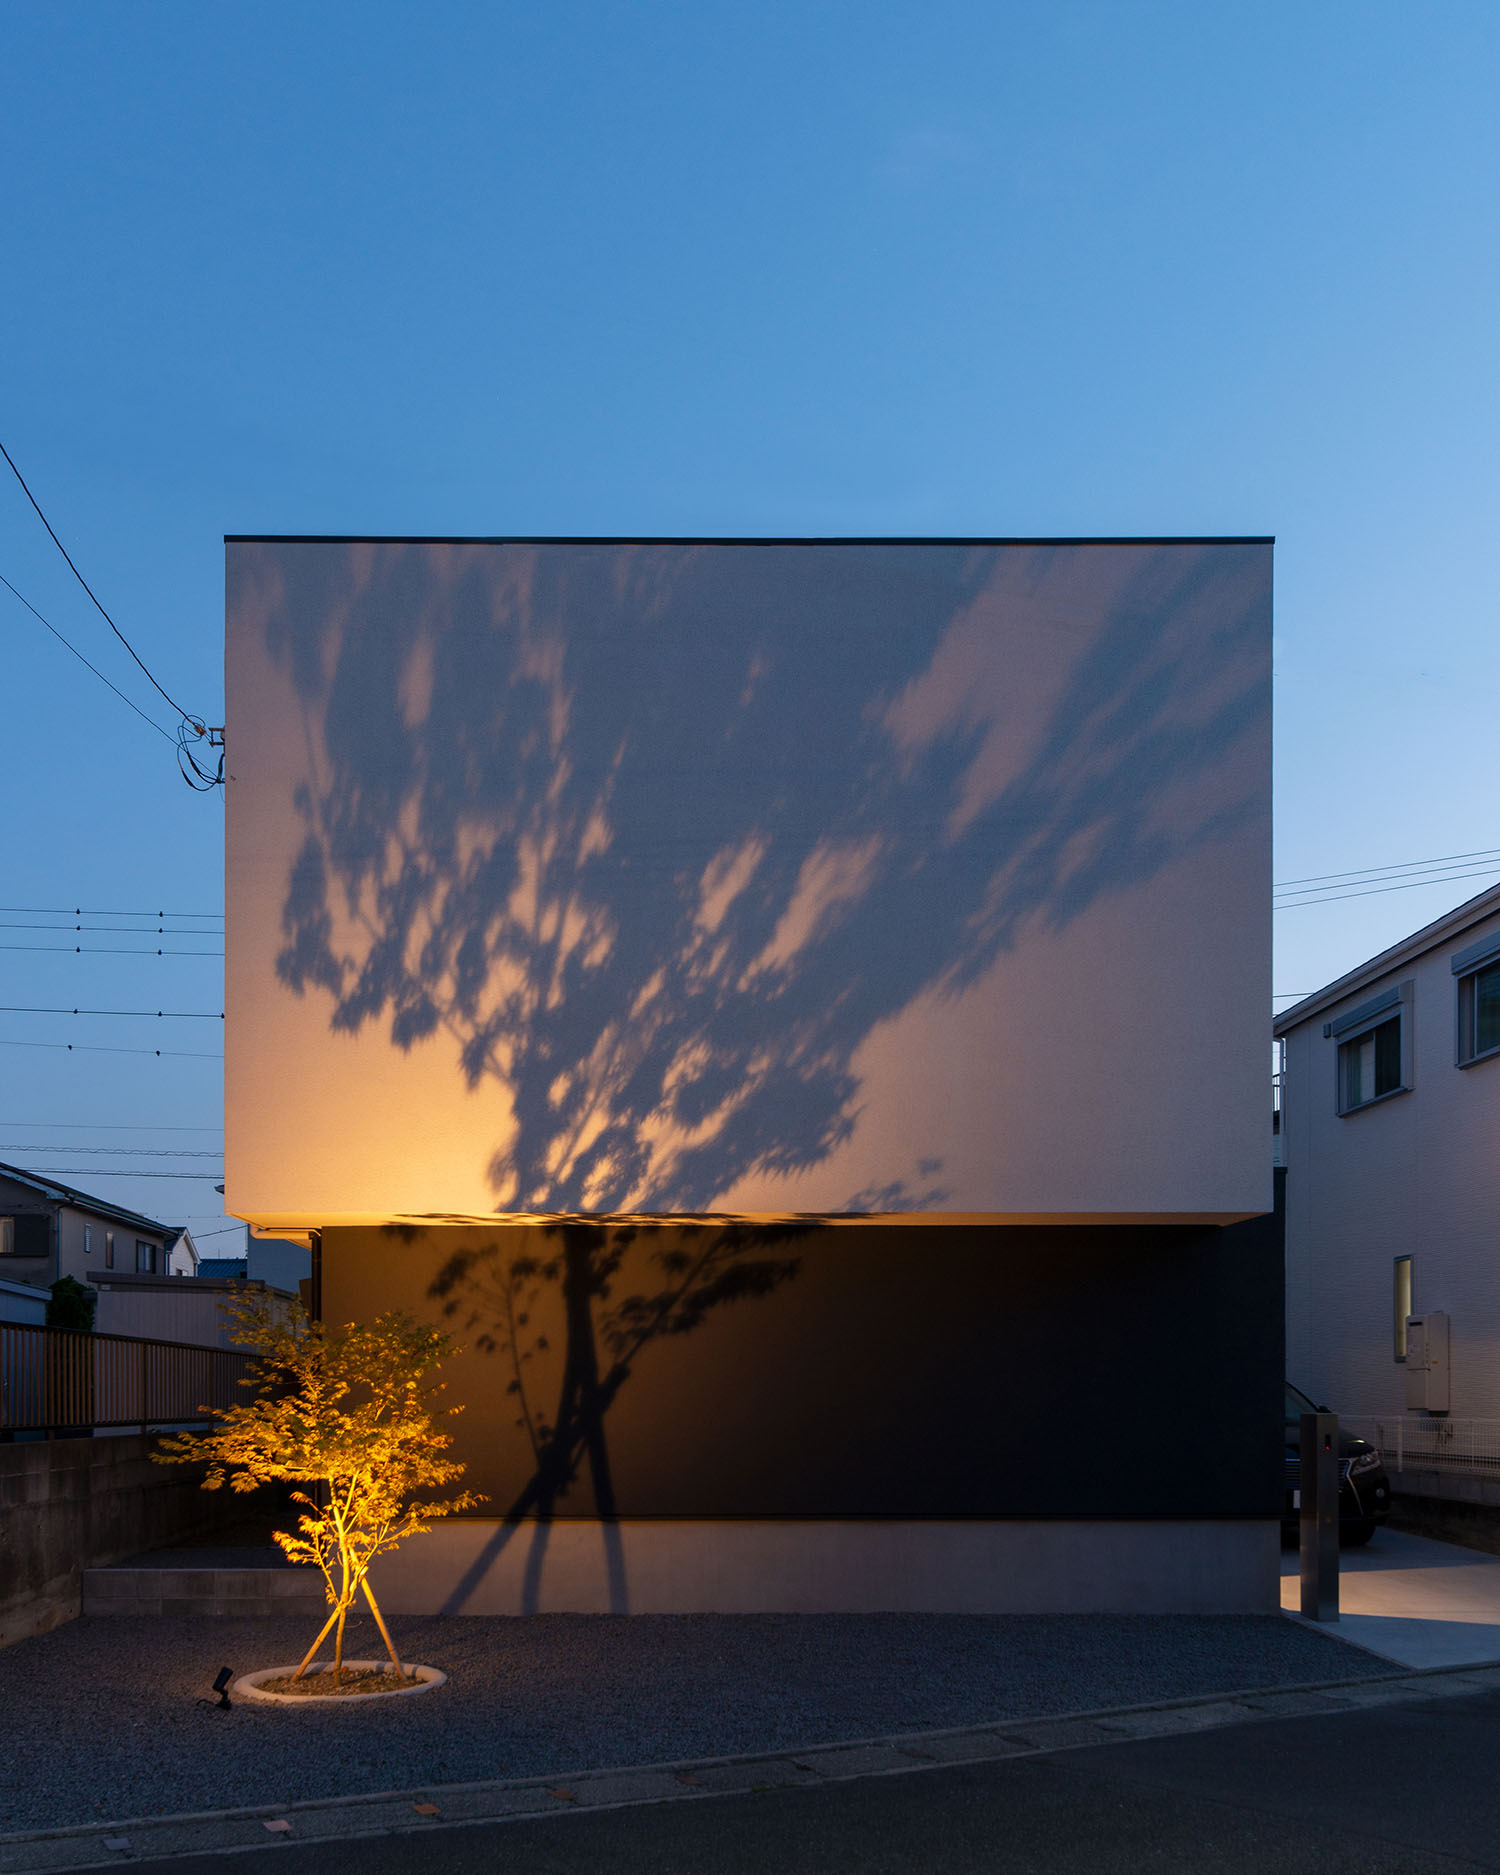 照明に照らされたシンボルツリーの影が白い外壁に映る住宅の外観・デザイン住宅